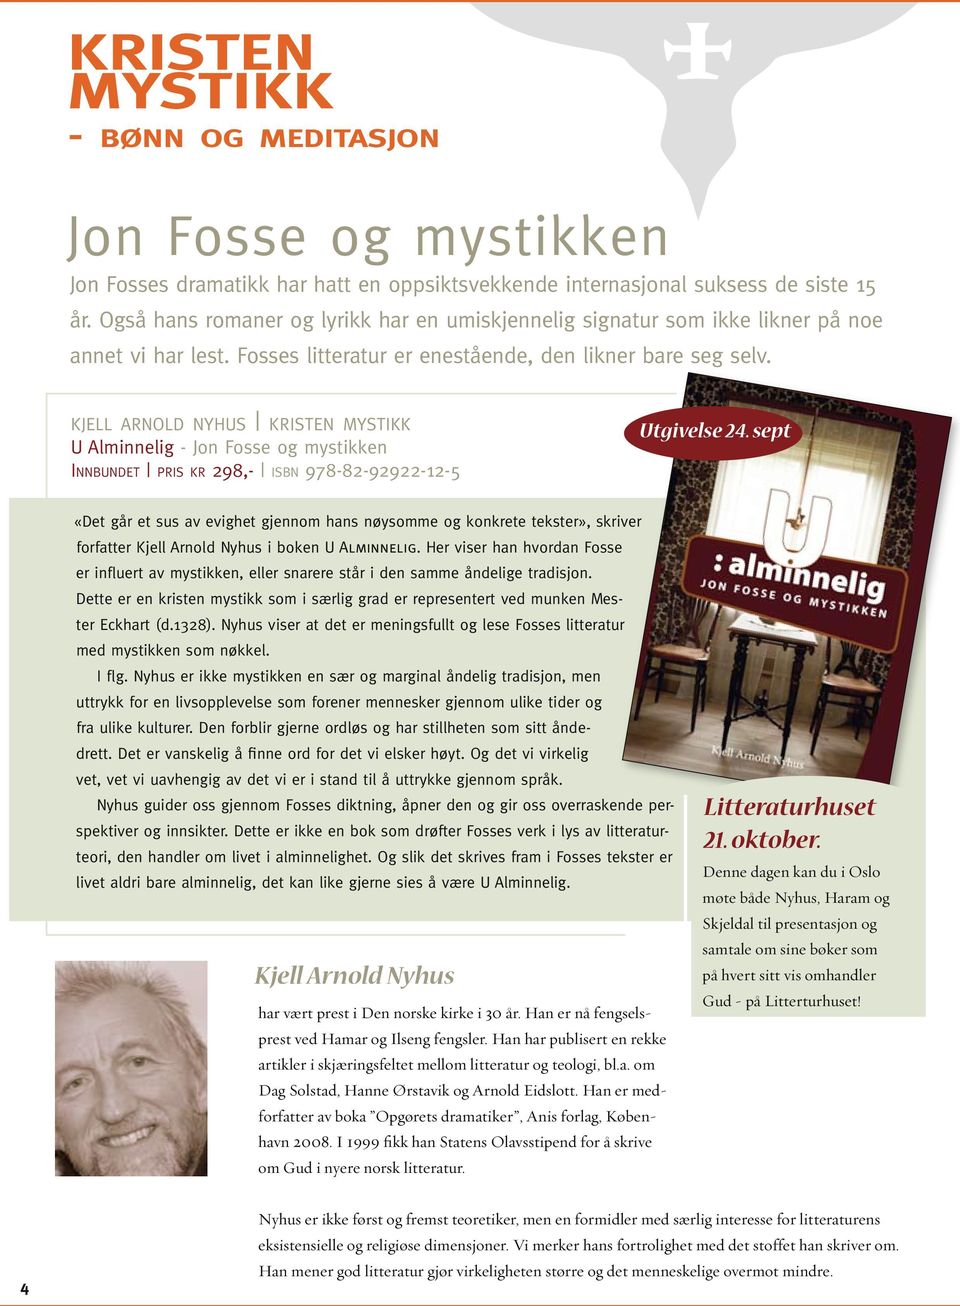 kjell arnold nyhus kristen mystikk U Alminnelig - Jon Fosse og mystikken Innbundet pris kr 298,- isbn 978-82-92922-12-5 Utgivelse 24.